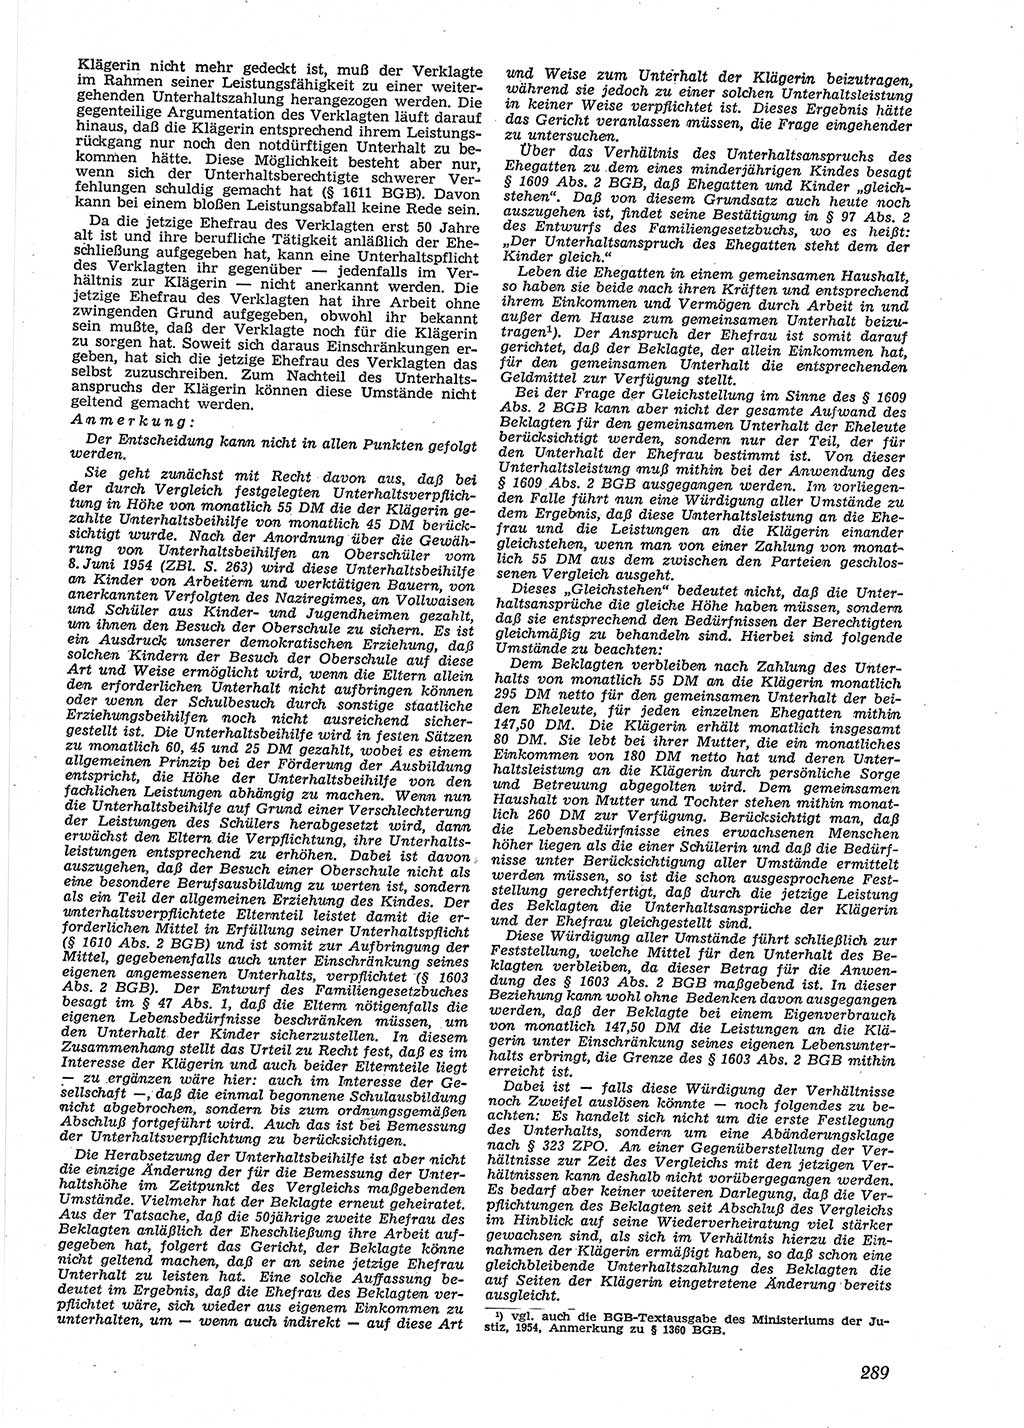 Neue Justiz (NJ), Zeitschrift für Recht und Rechtswissenschaft [Deutsche Demokratische Republik (DDR)], 9. Jahrgang 1955, Seite 289 (NJ DDR 1955, S. 289)